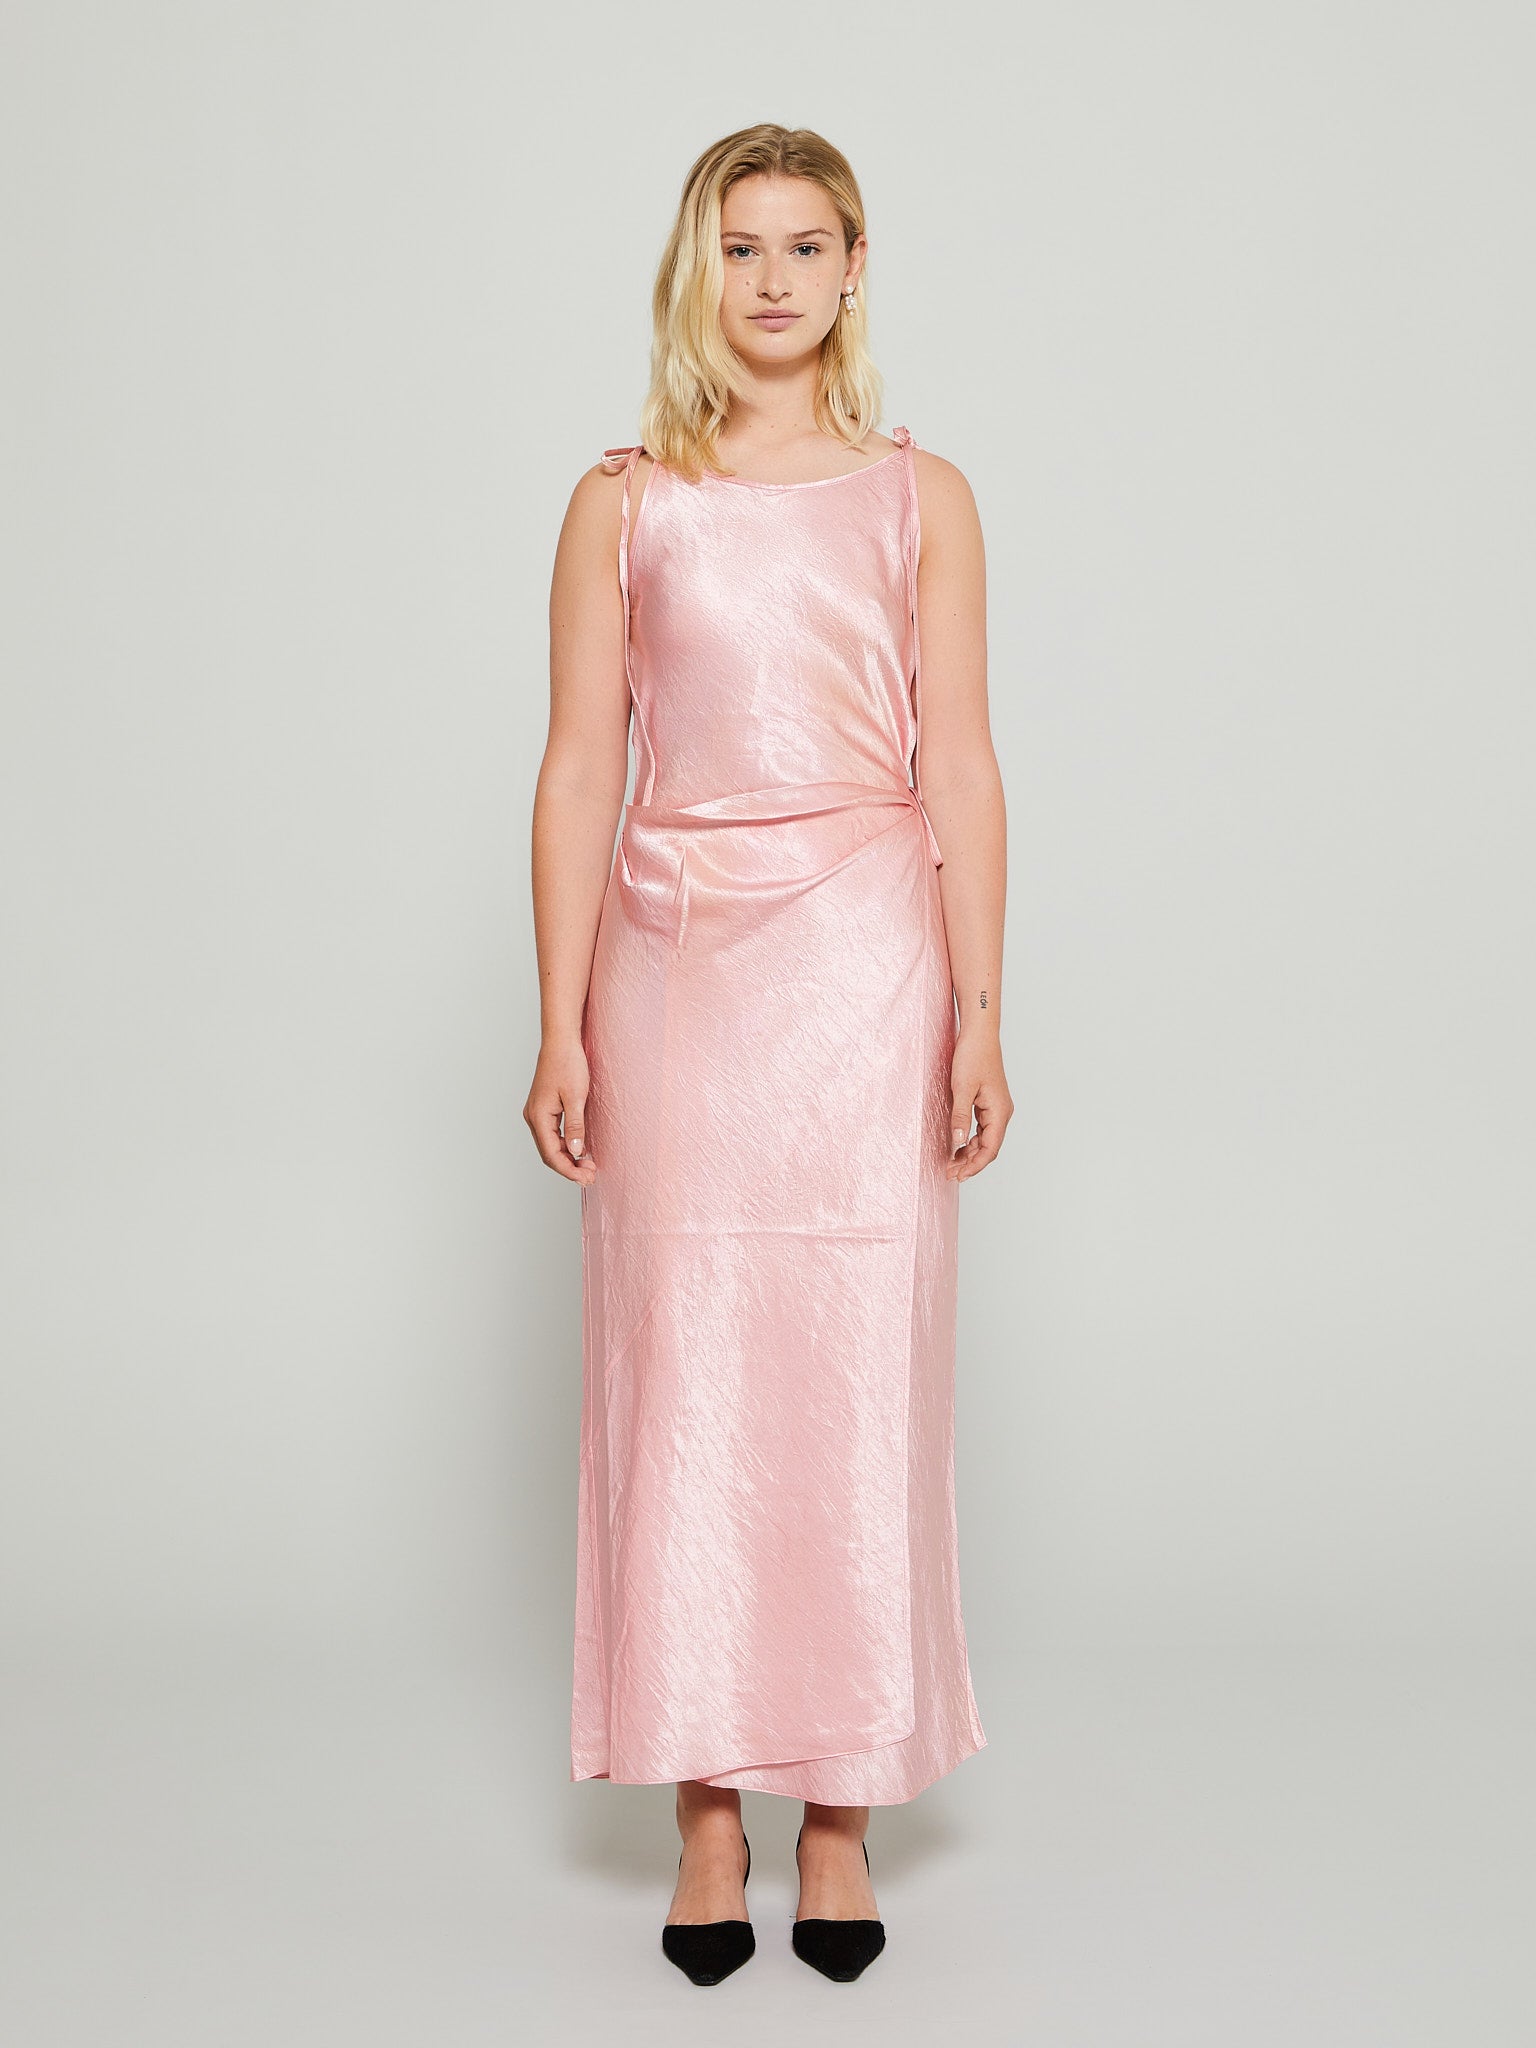 Acne Studios - Satin Strap Dress in Fresh Pink